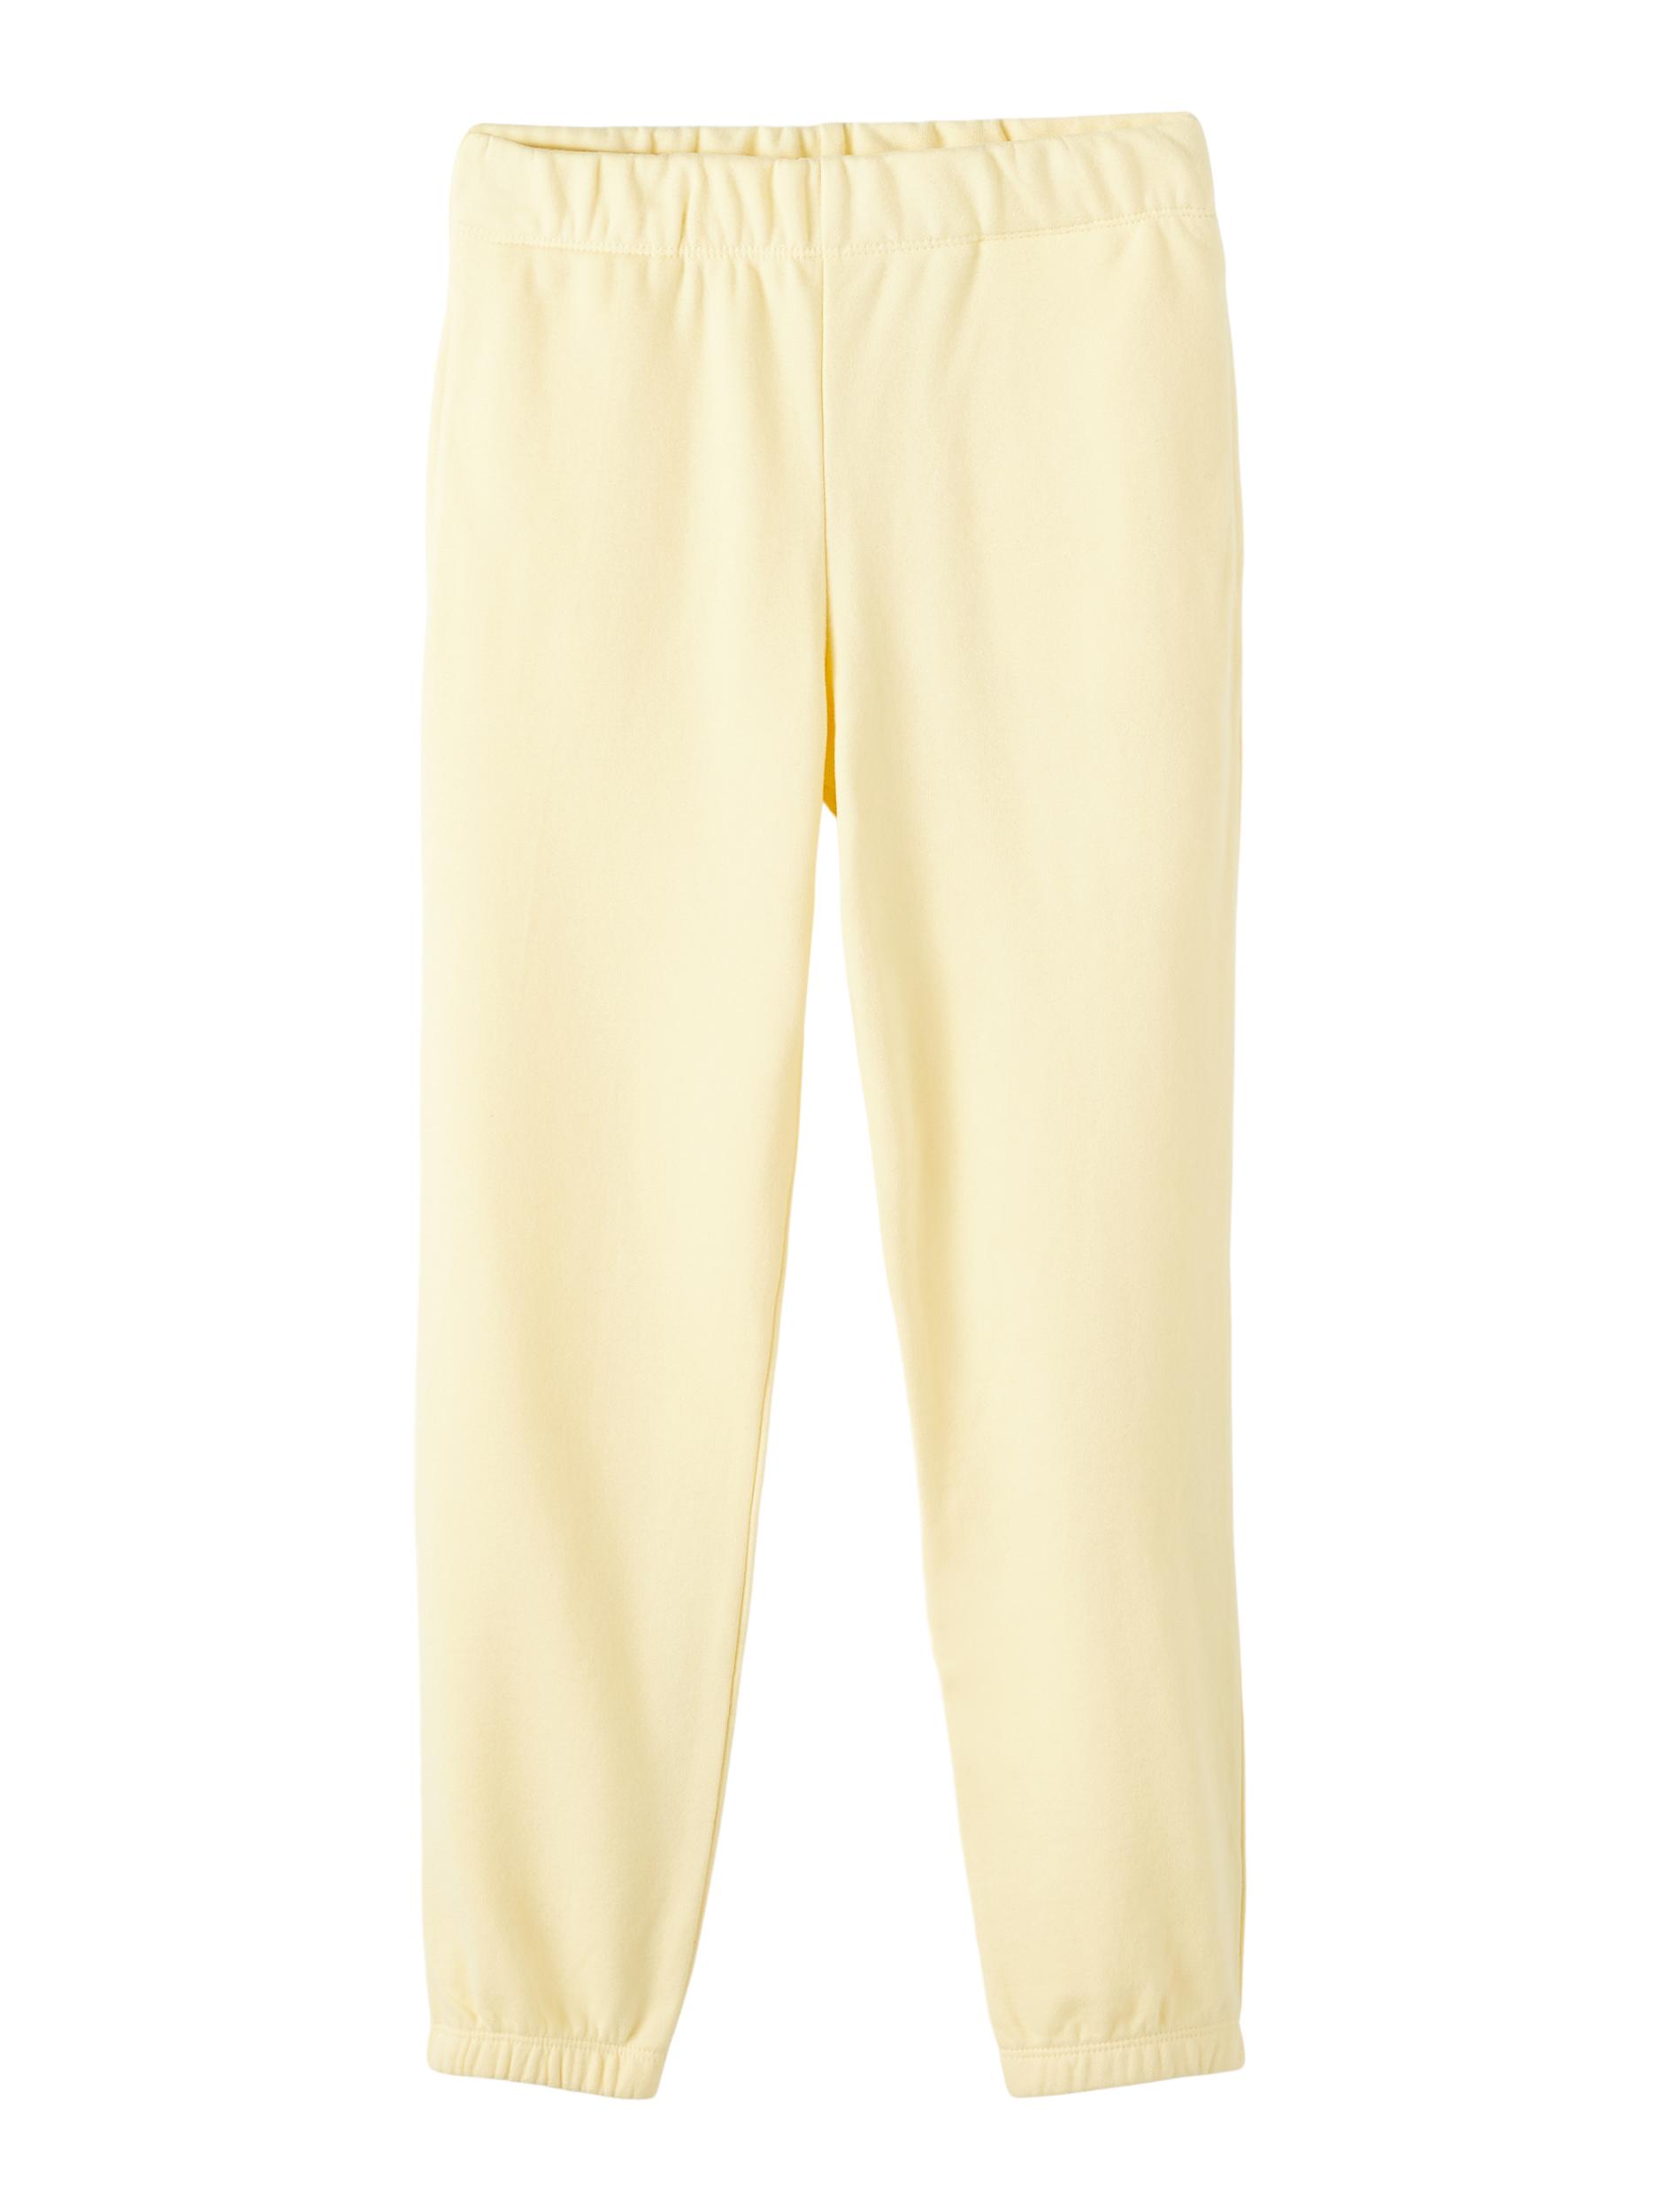  Sweatpants, Double Cream, 116 cm